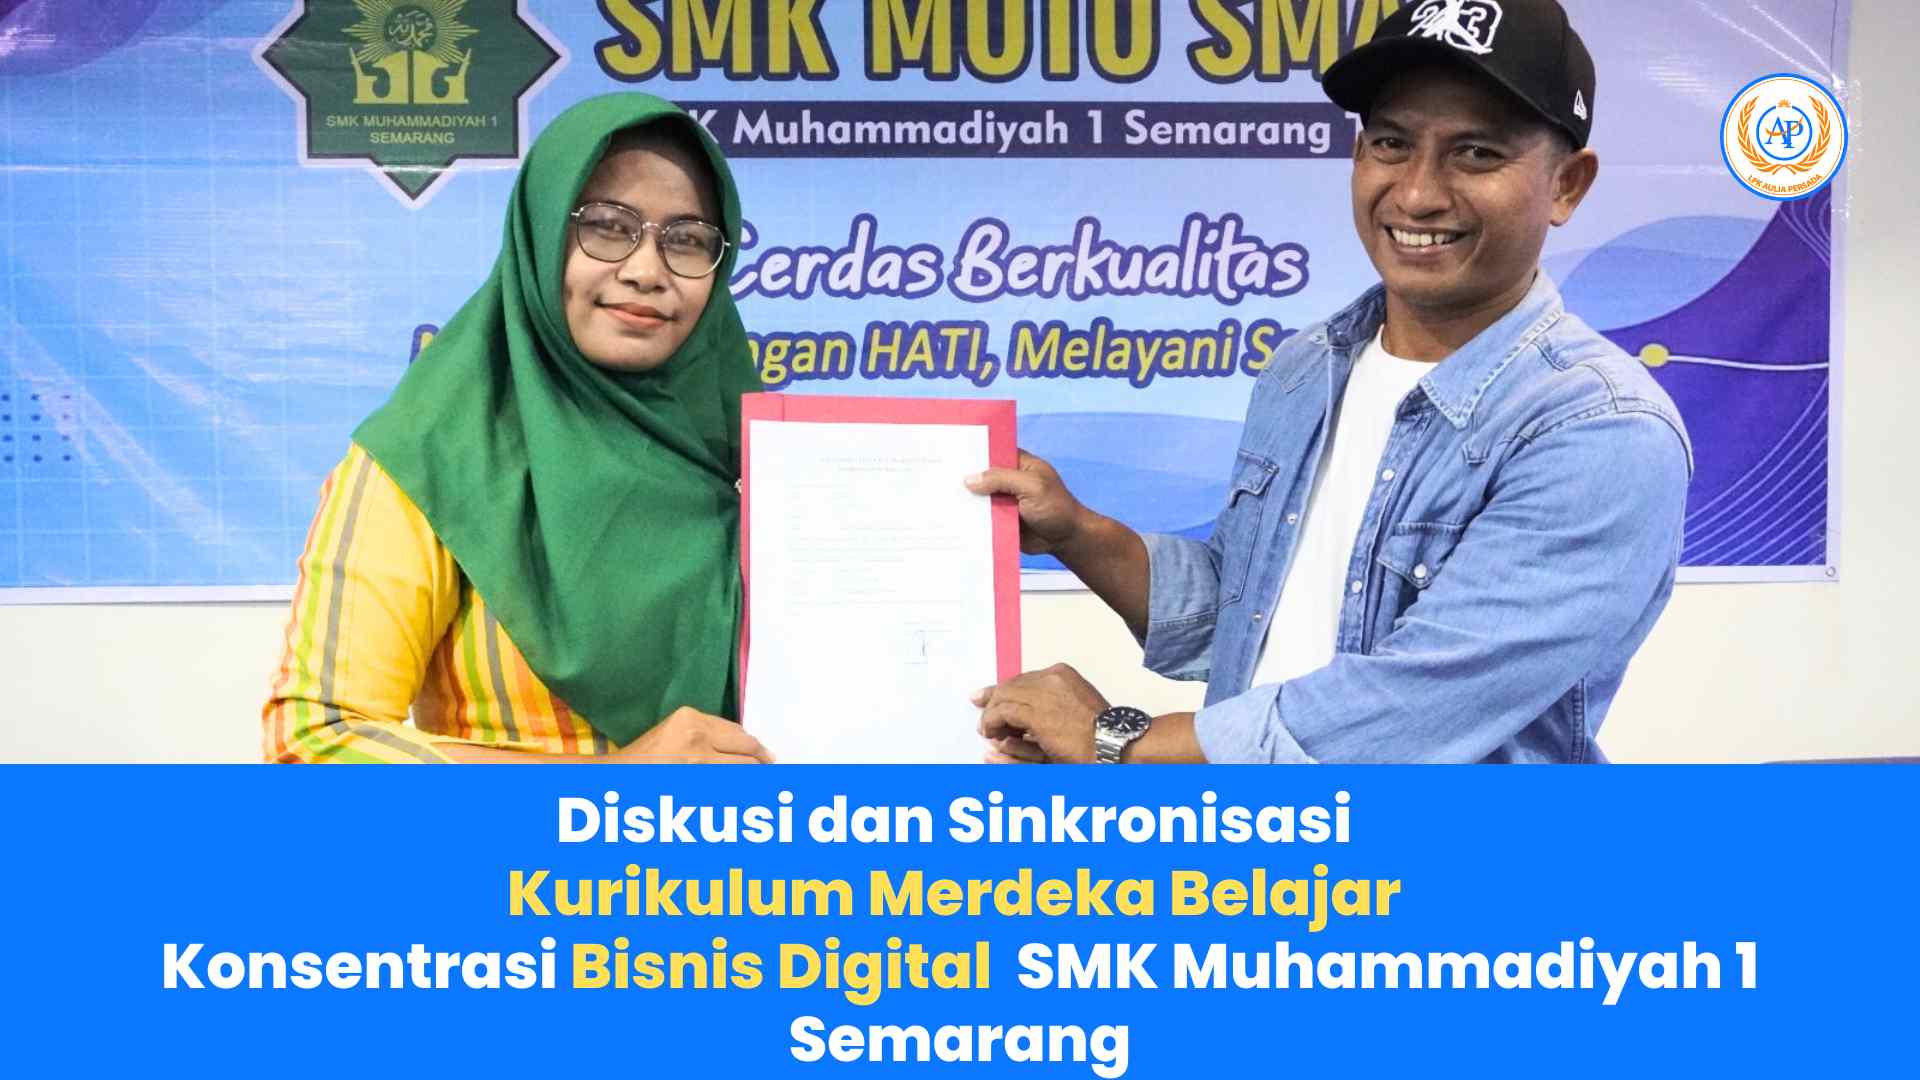 Diskusi dan Sinkronisasi Kurikulum Merdeka Belajar Konsentrasi Kejuruan Bisnis Digital untuk SMK Muhammadiyah 1 Semarang: Membuka Peluang Karir di Era Digital